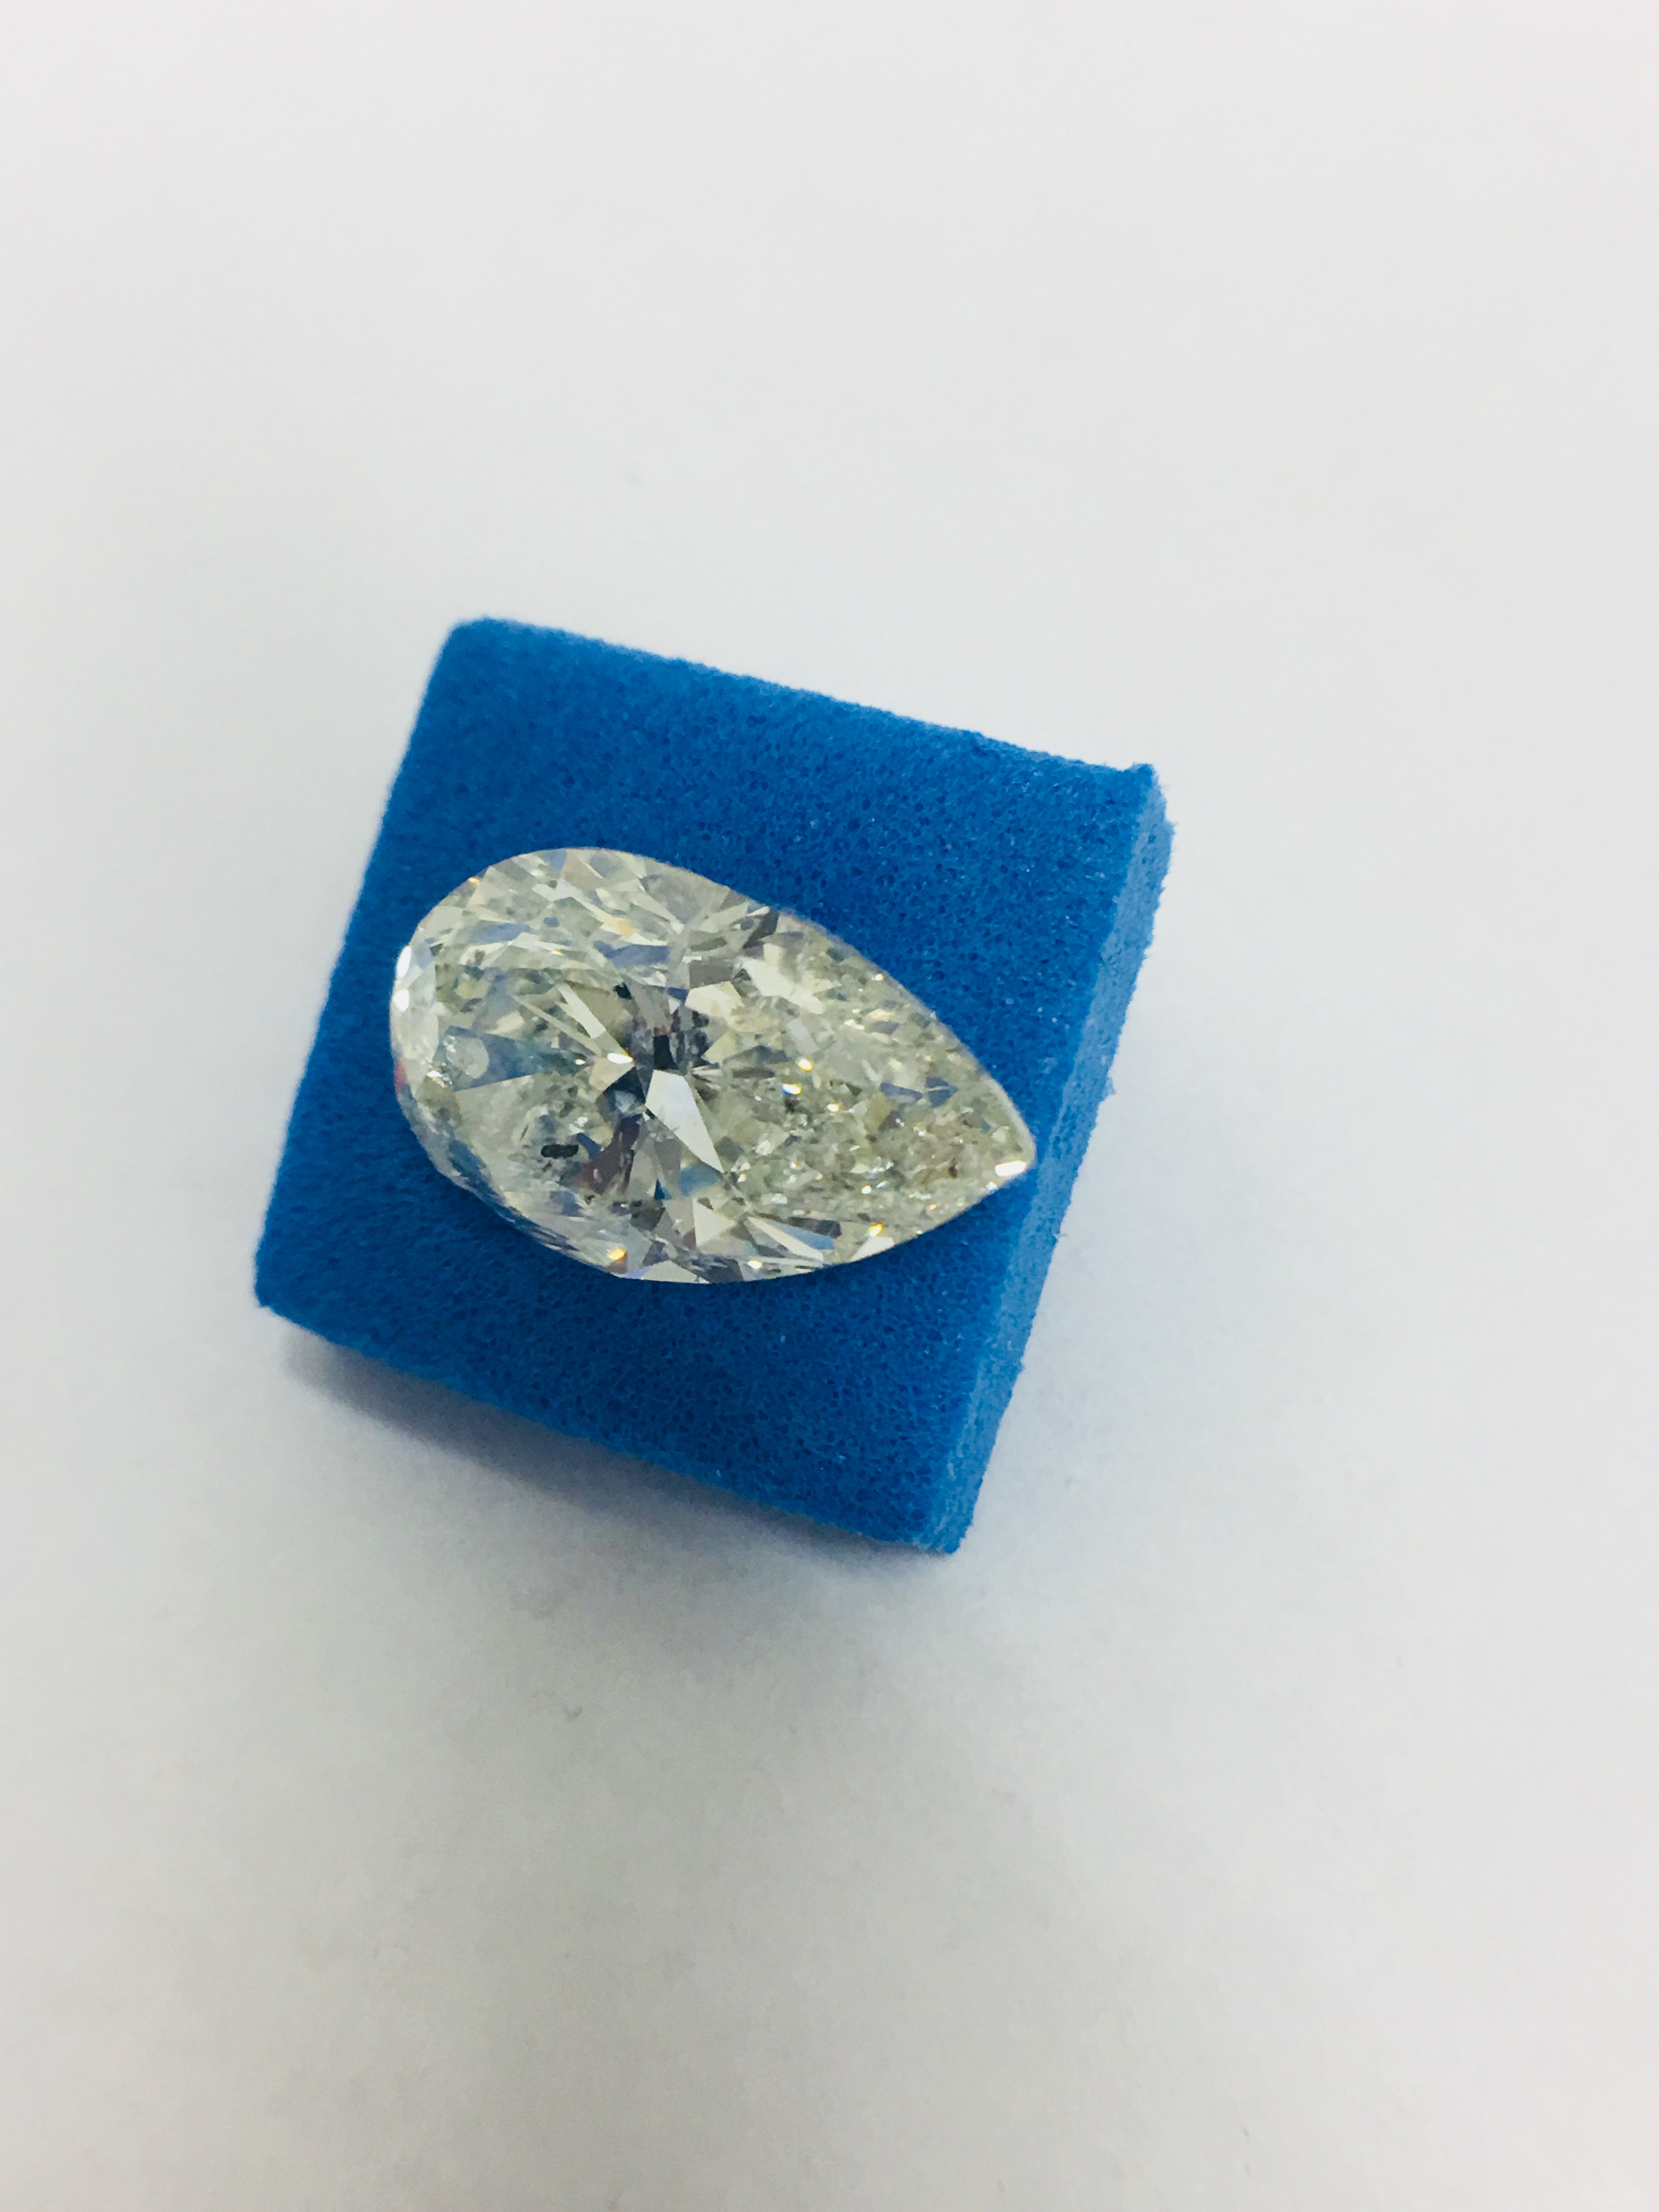 3.73ct Pearshape loose diamond - Image 4 of 4